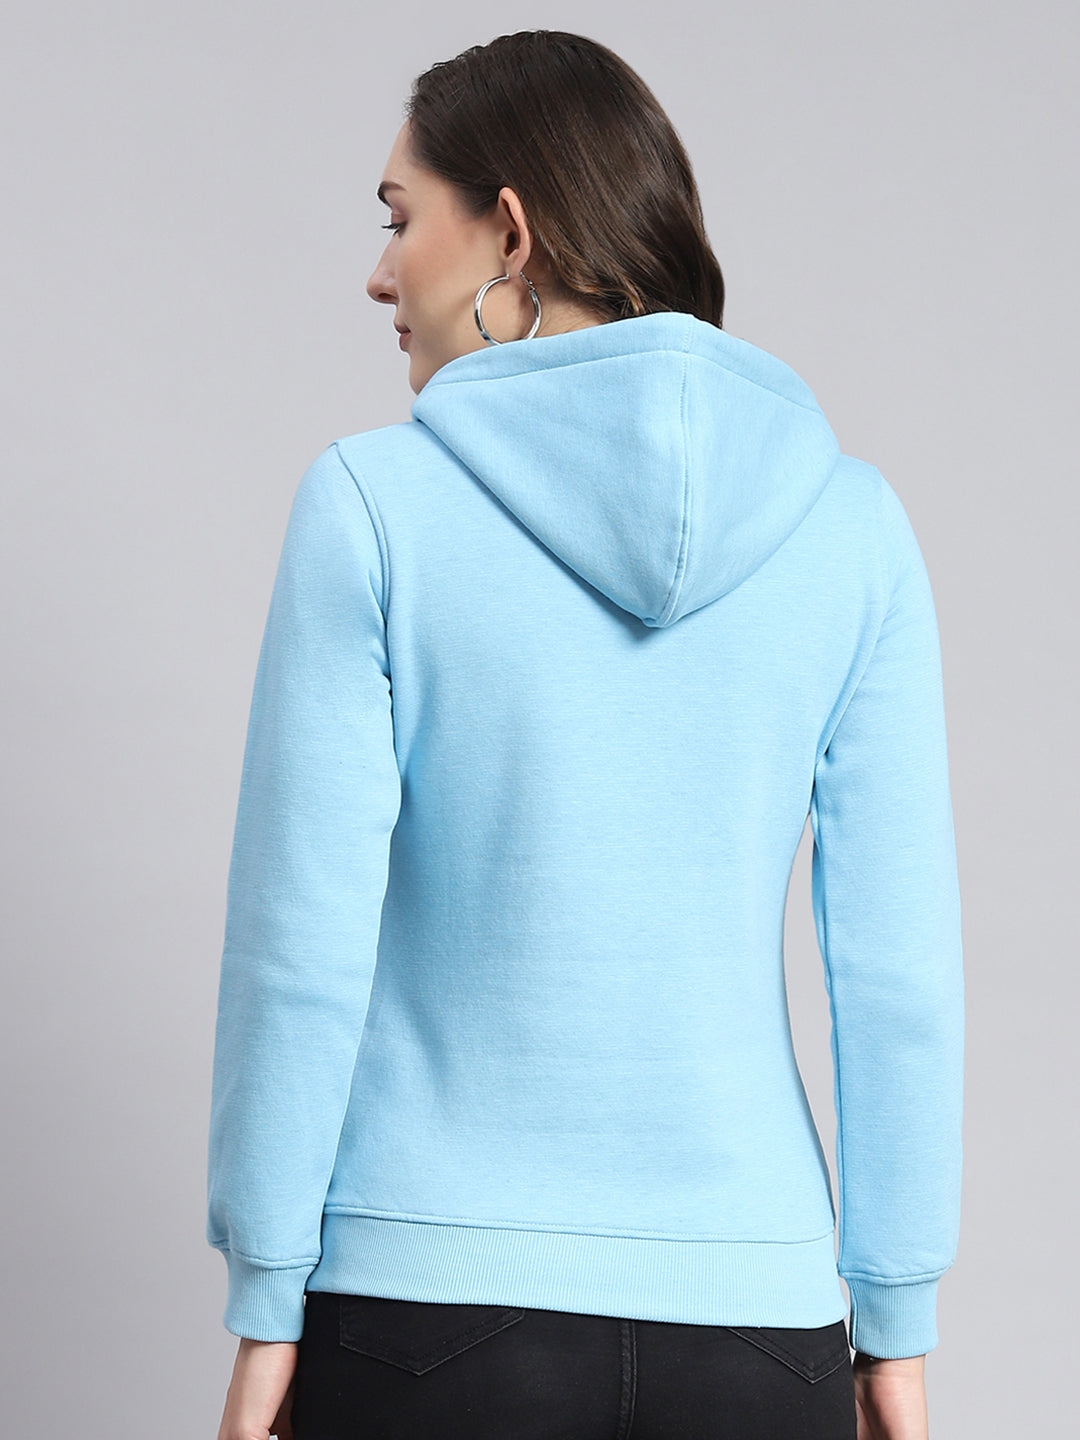 Women Blue Printed Hooded Full Sleeve Sweatshirts